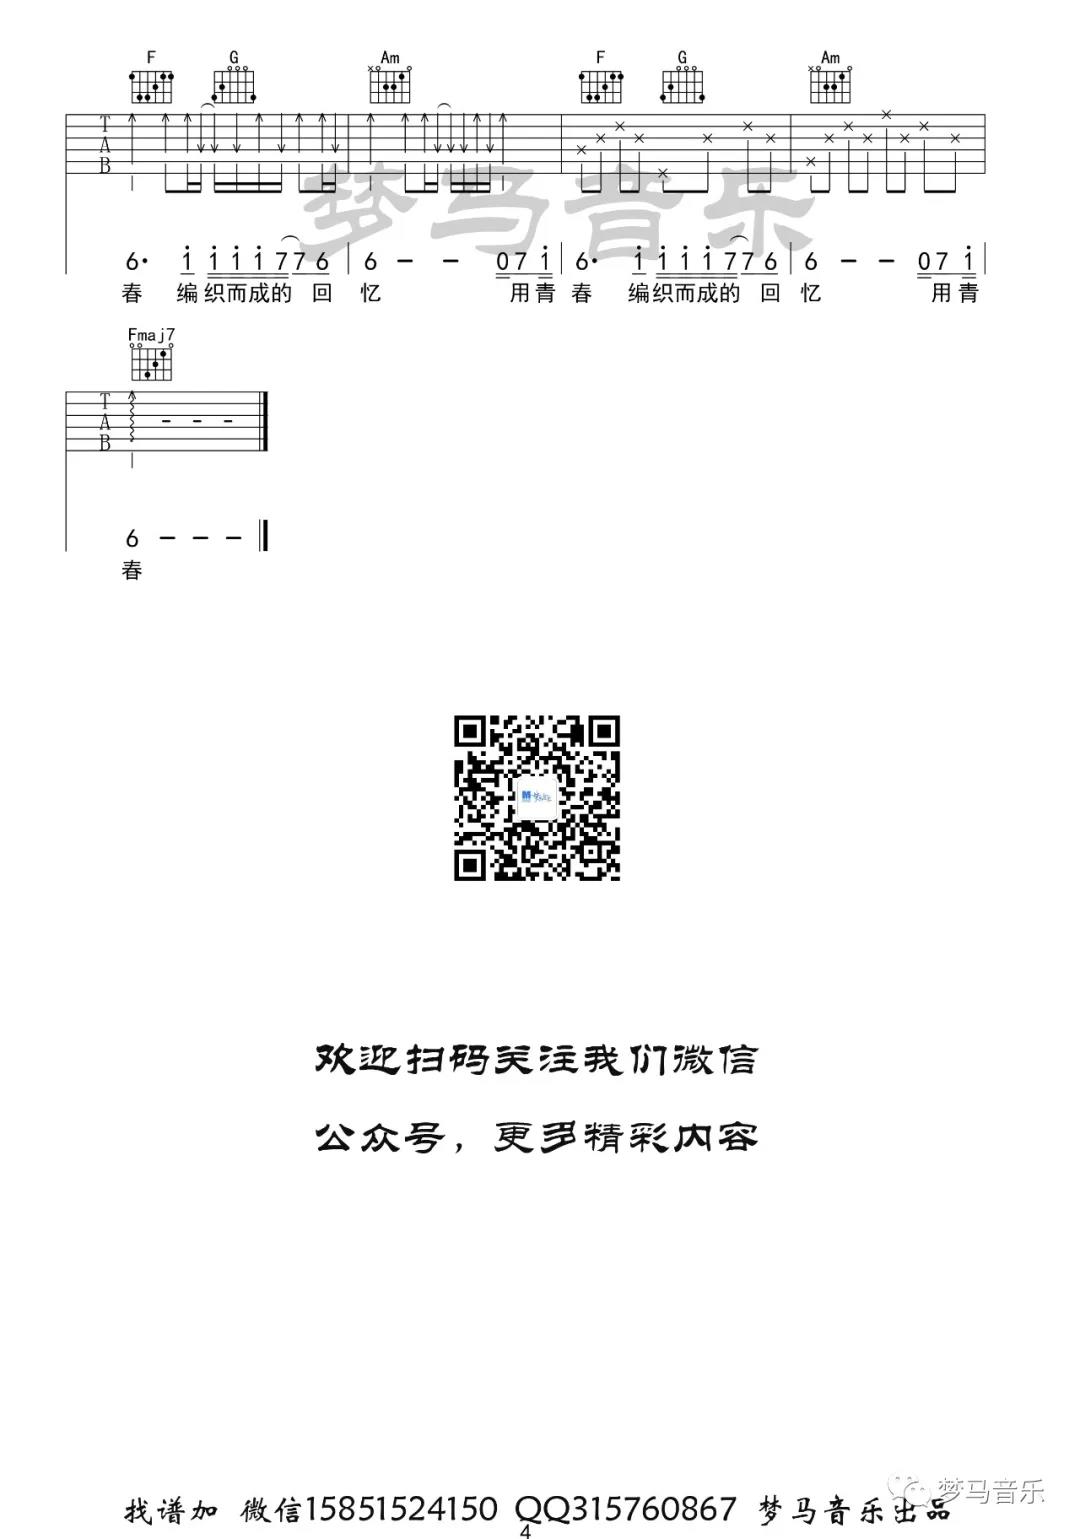 夏祯阳《玫瑰》吉他谱(C调)-Guitar Music Score